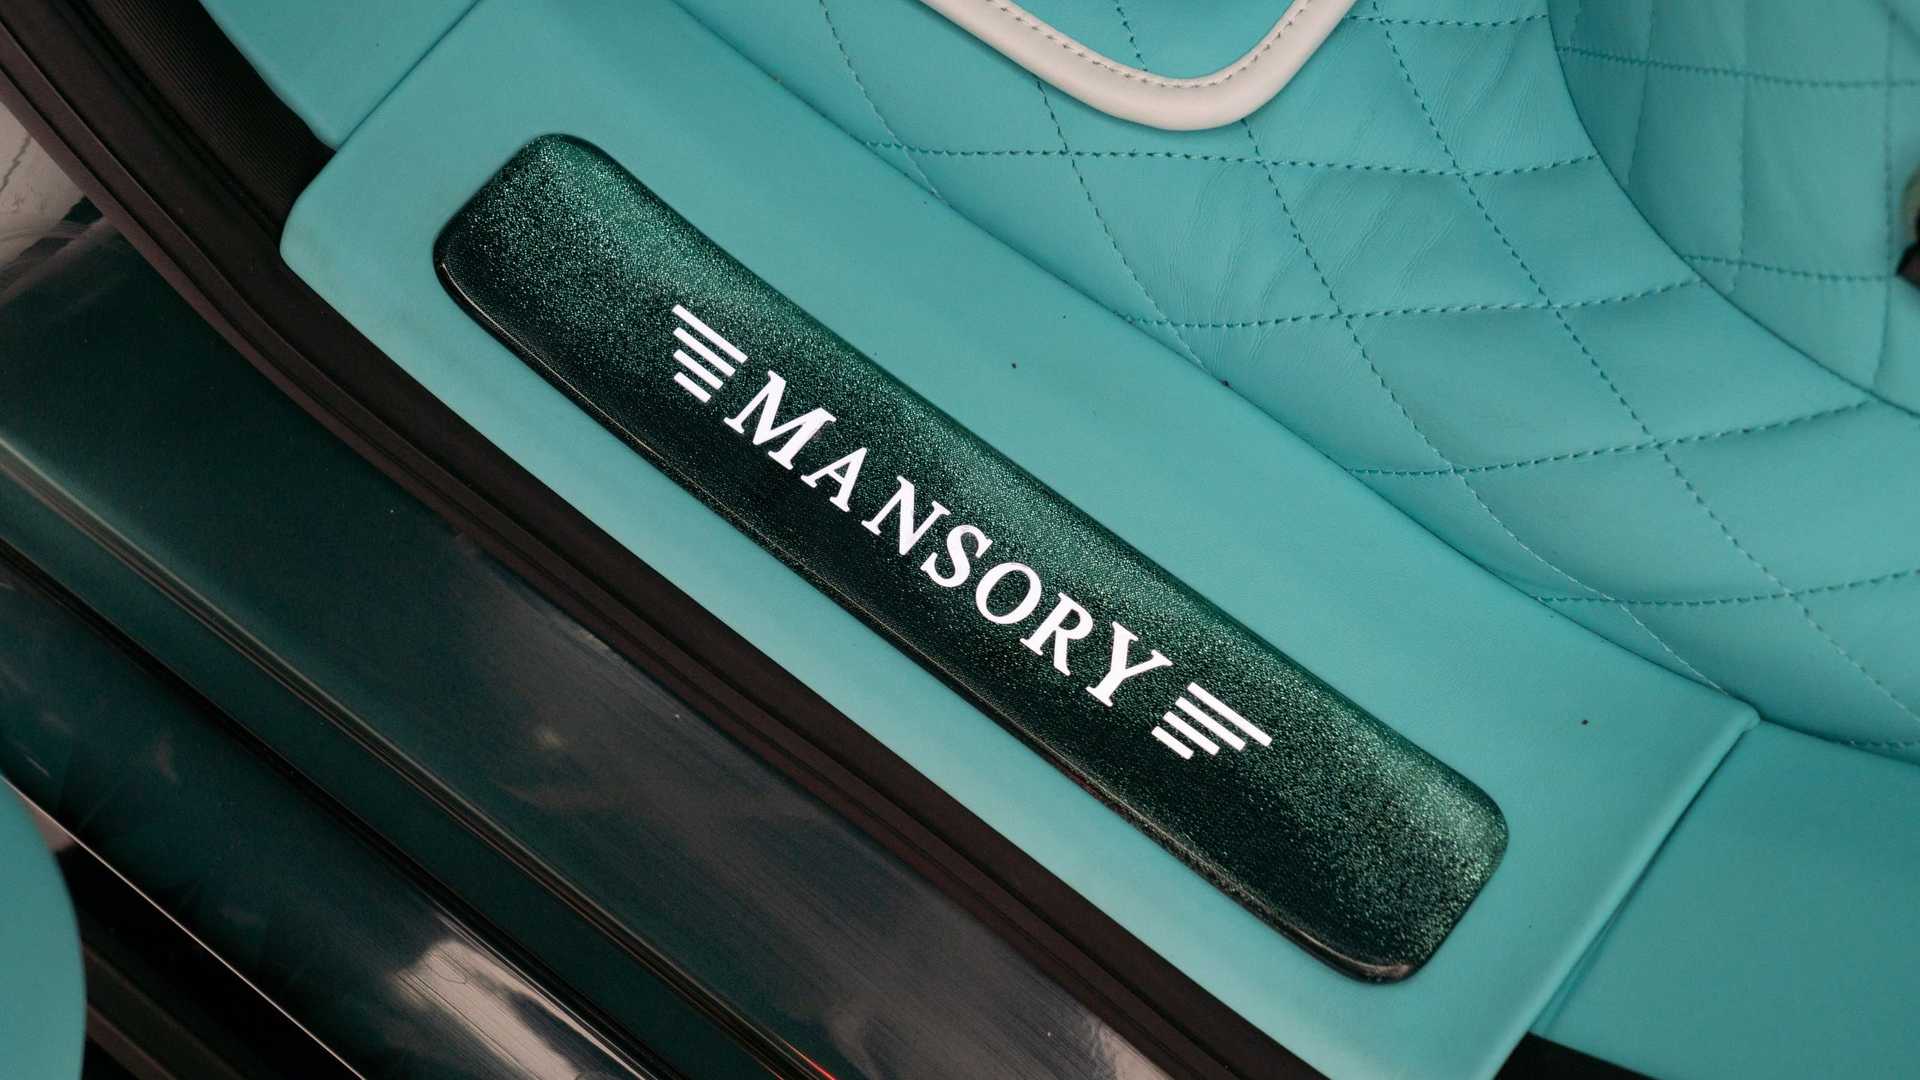 Chiêm ngưỡng Mercedes-AMG G63 phiên bản one-off 2 tông màu cực chất của Mansory mercedes-amg-g63-algorithmic-fade-by-mansory-10.jpg